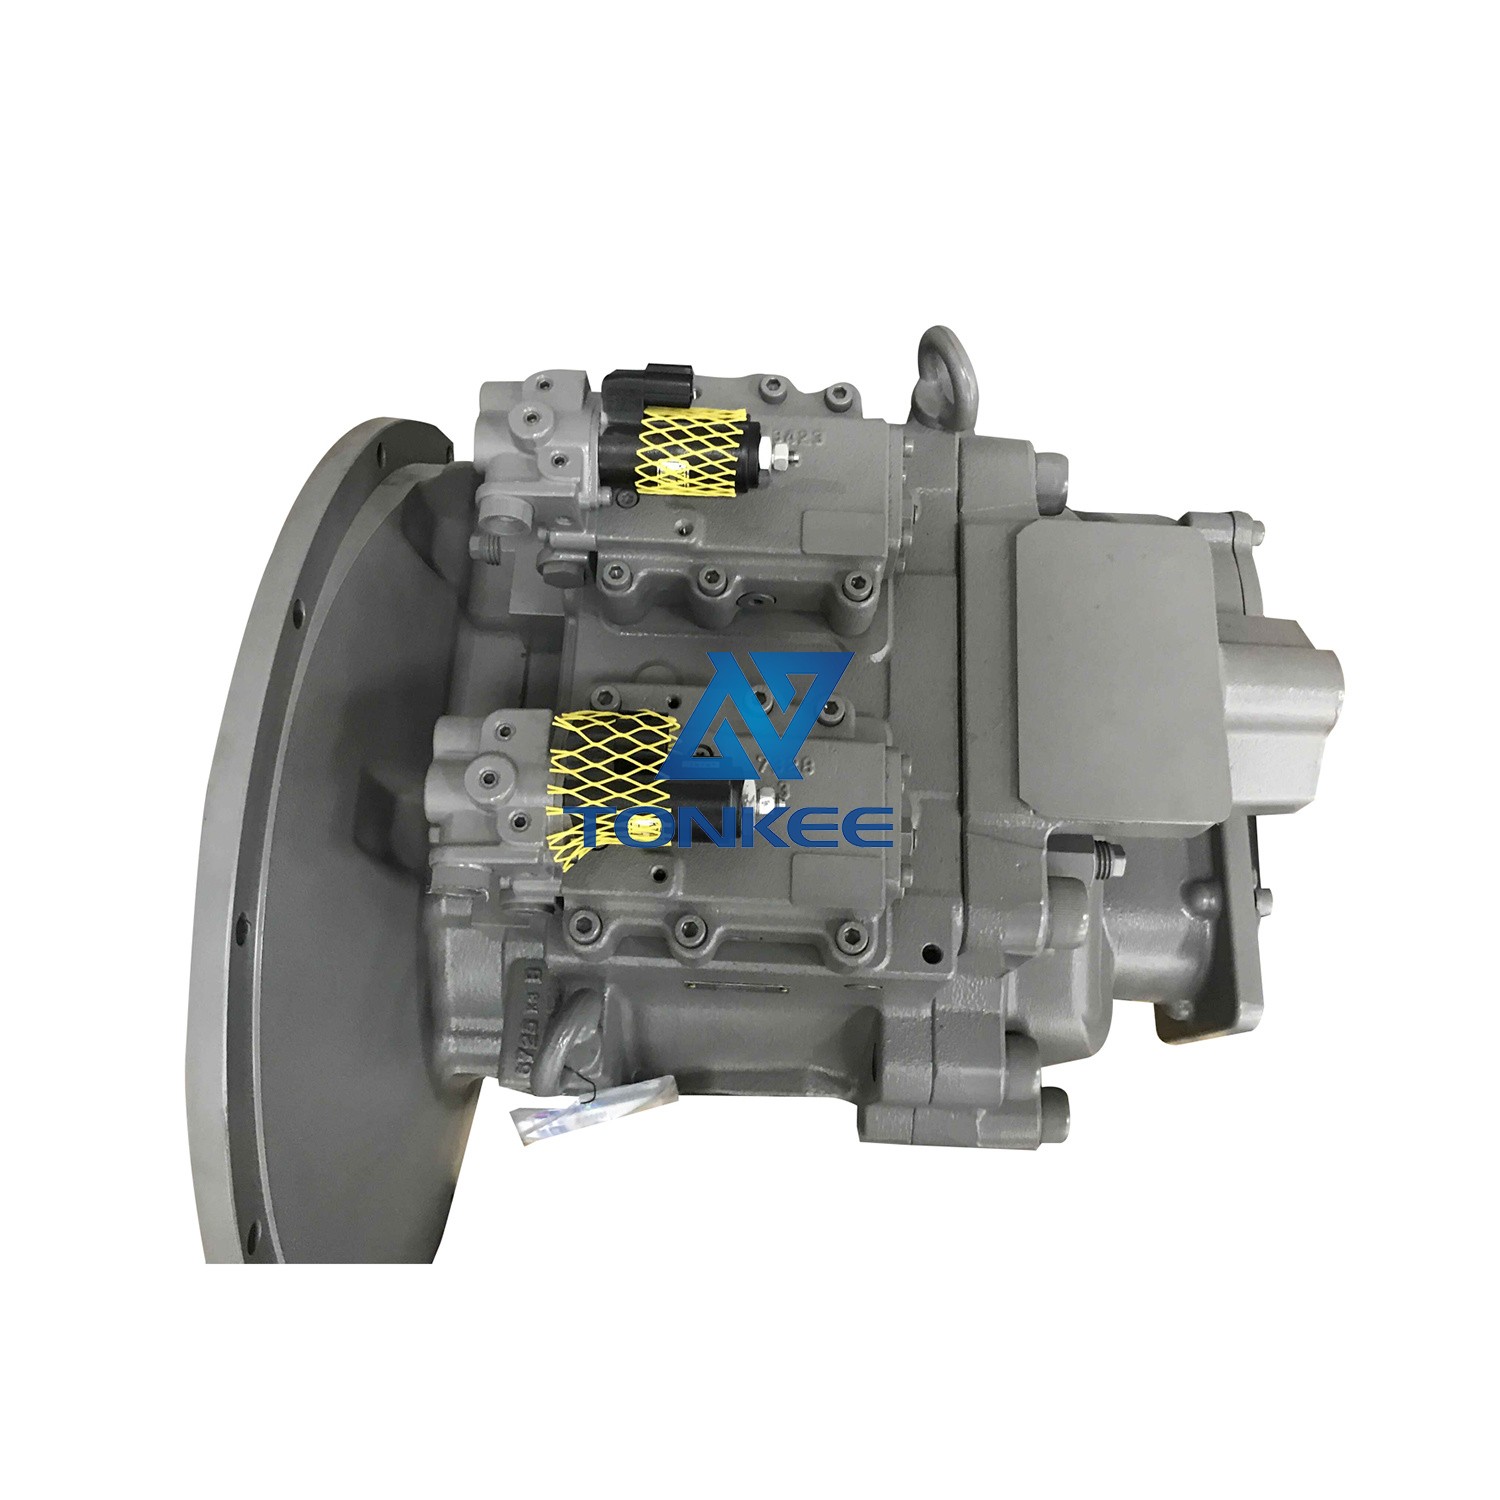 K5V200DPH K5V200DPH111R-0E11 4432815 hydraulic main pump ZX450 ZX450-1 ZX470 ZX470-5G piston pump